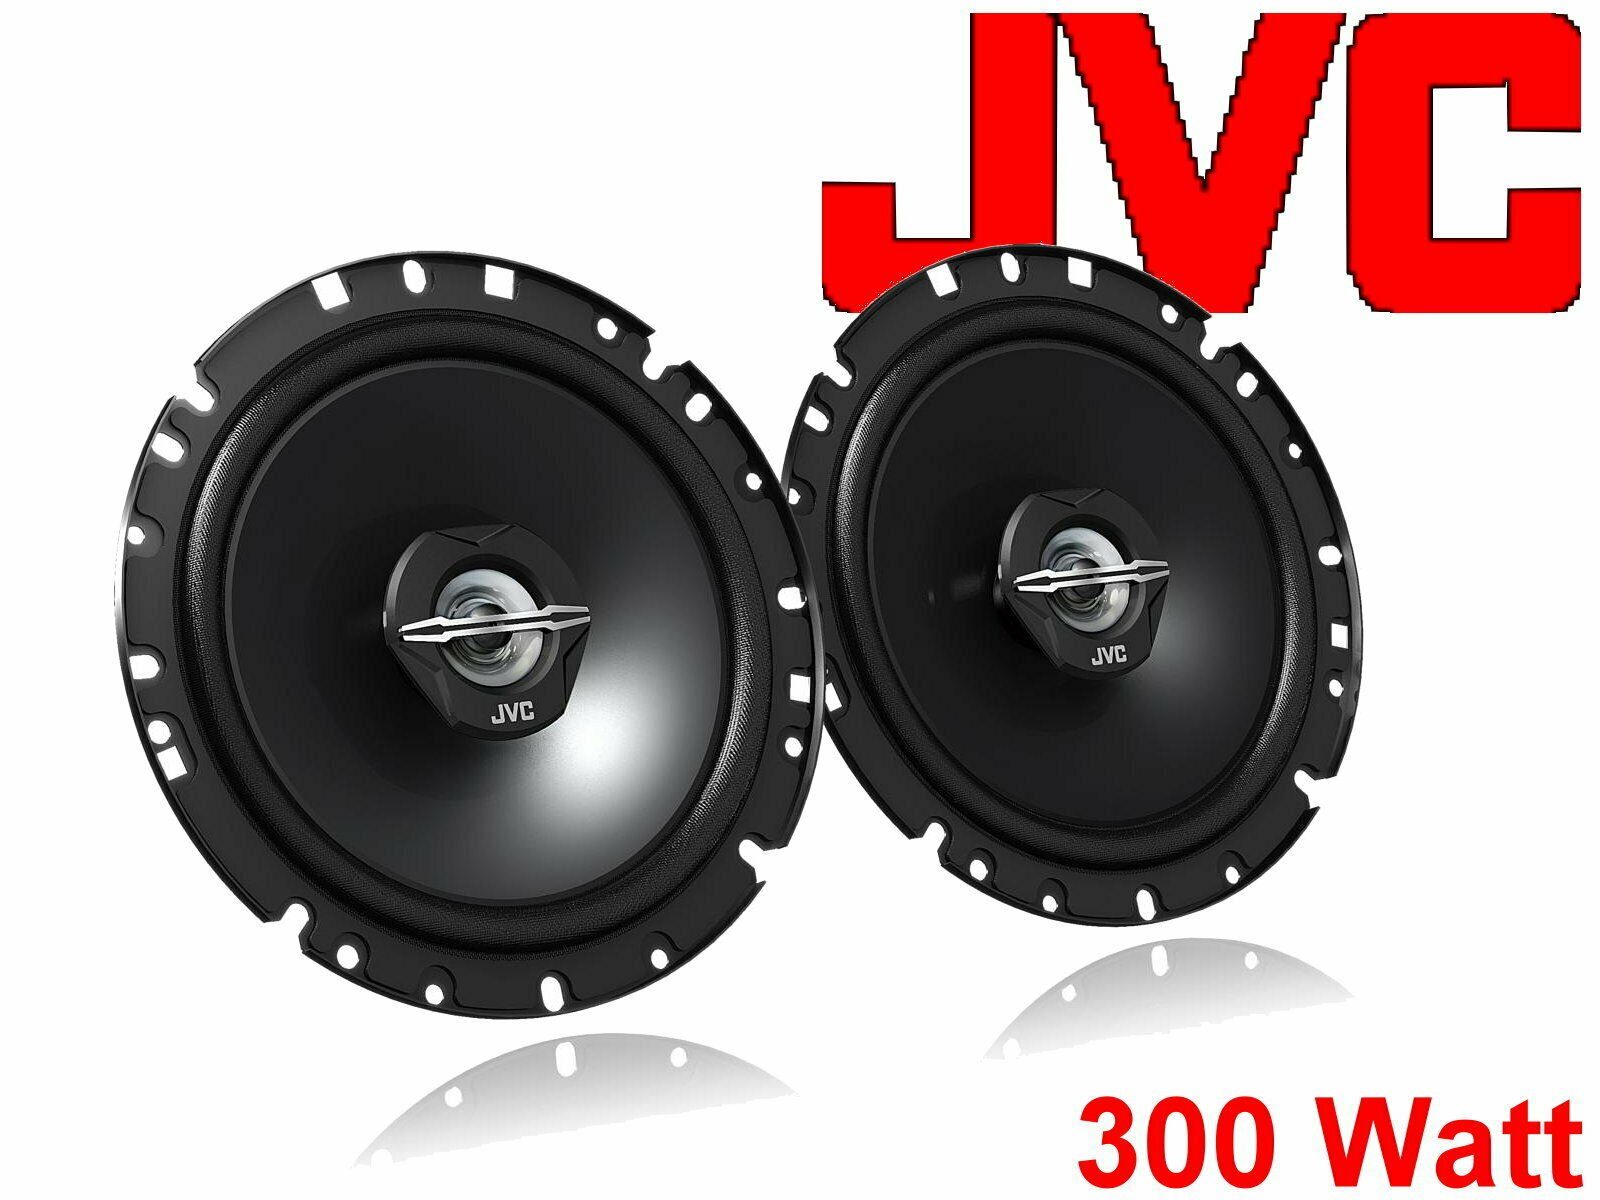 DSX JVC (30 Mii Seat W) Auto-Lautsprecher 11- Set passend Bj Lautsprecher für